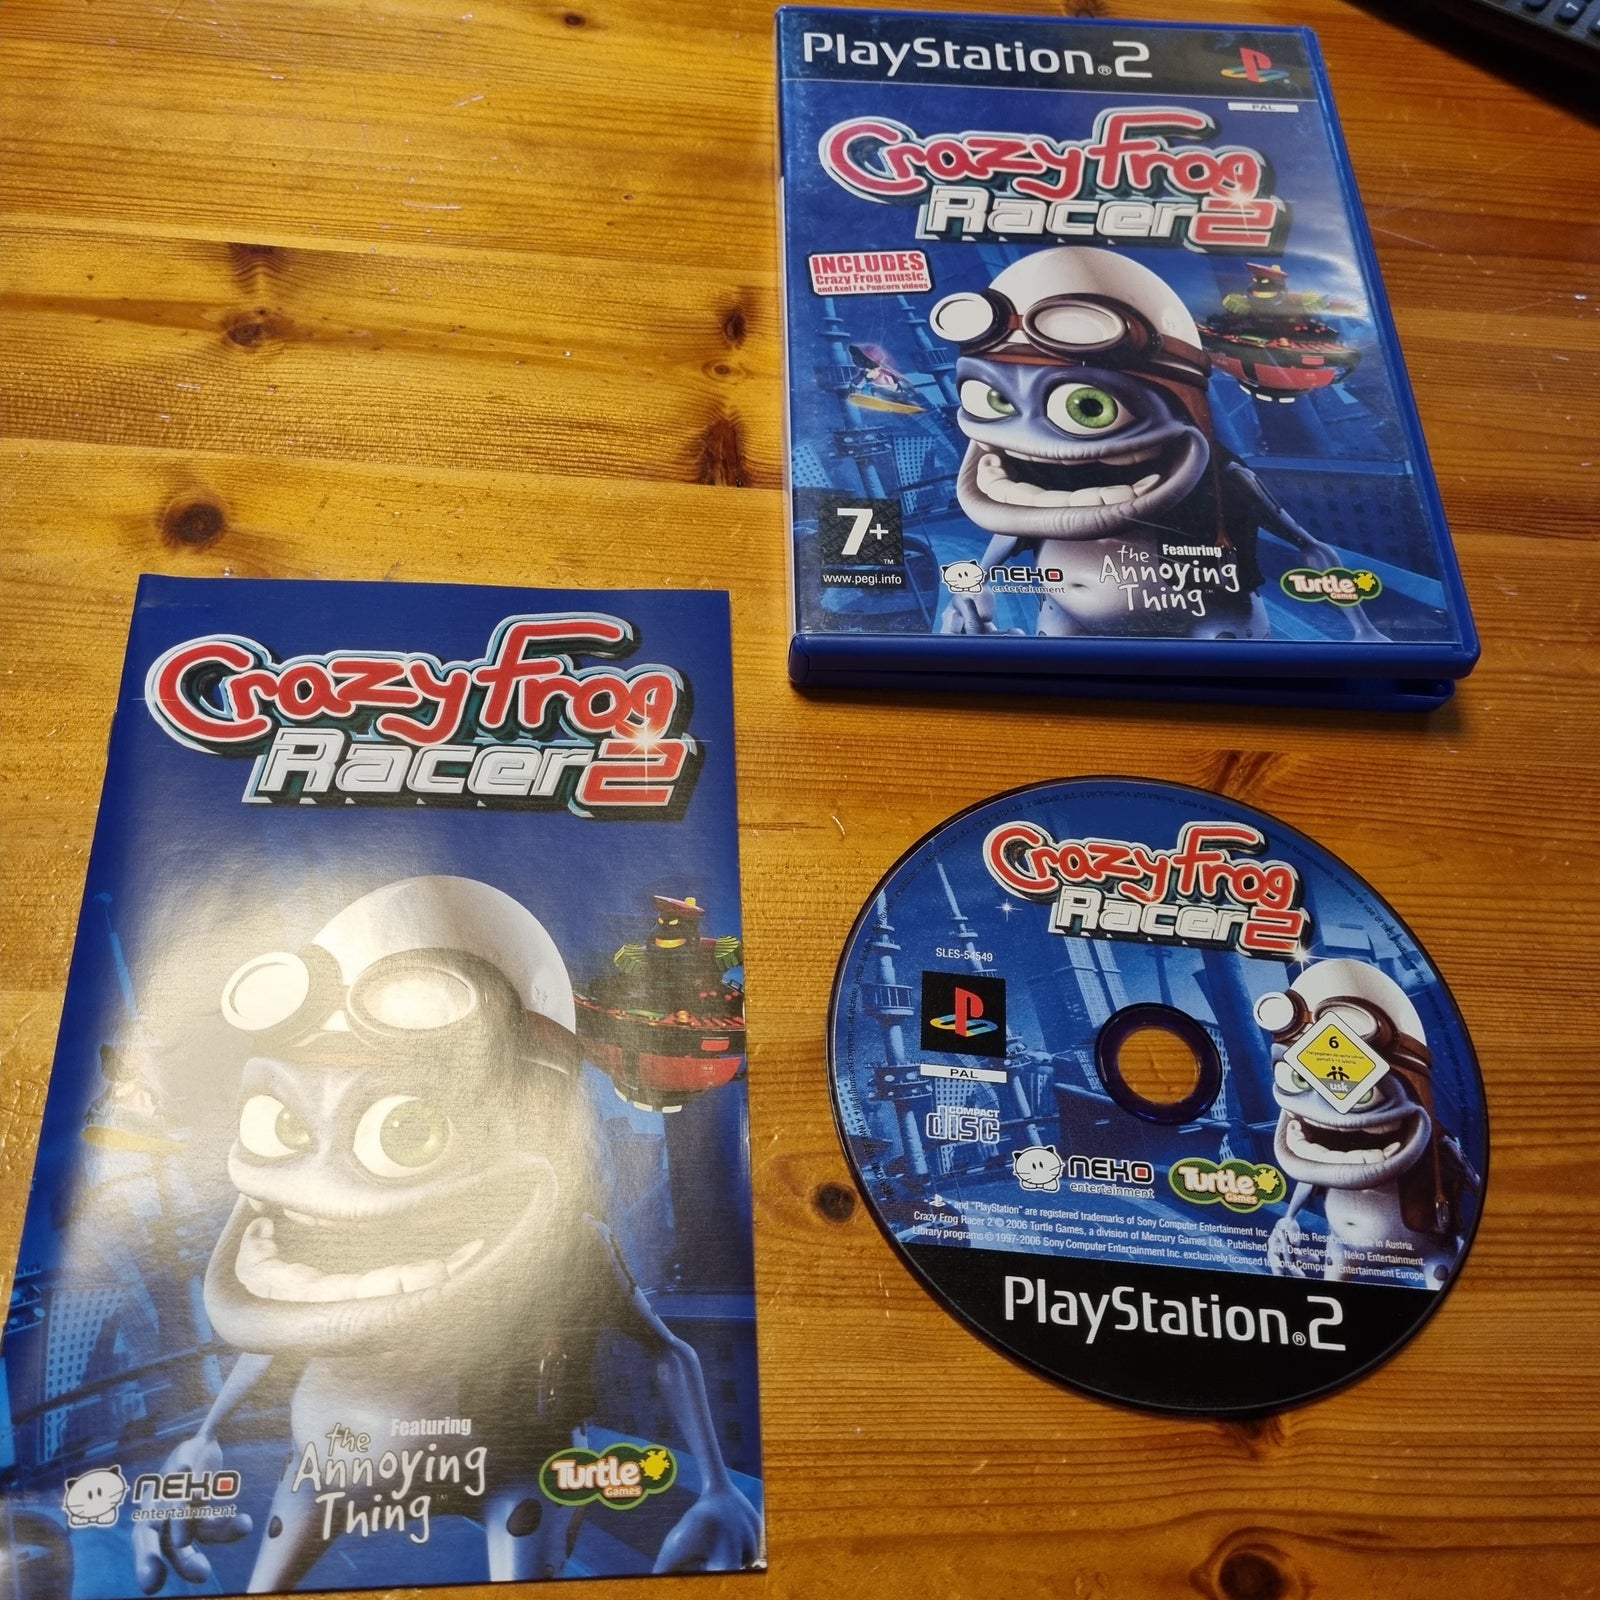 Crazy frog Racer 2, PS2, racing